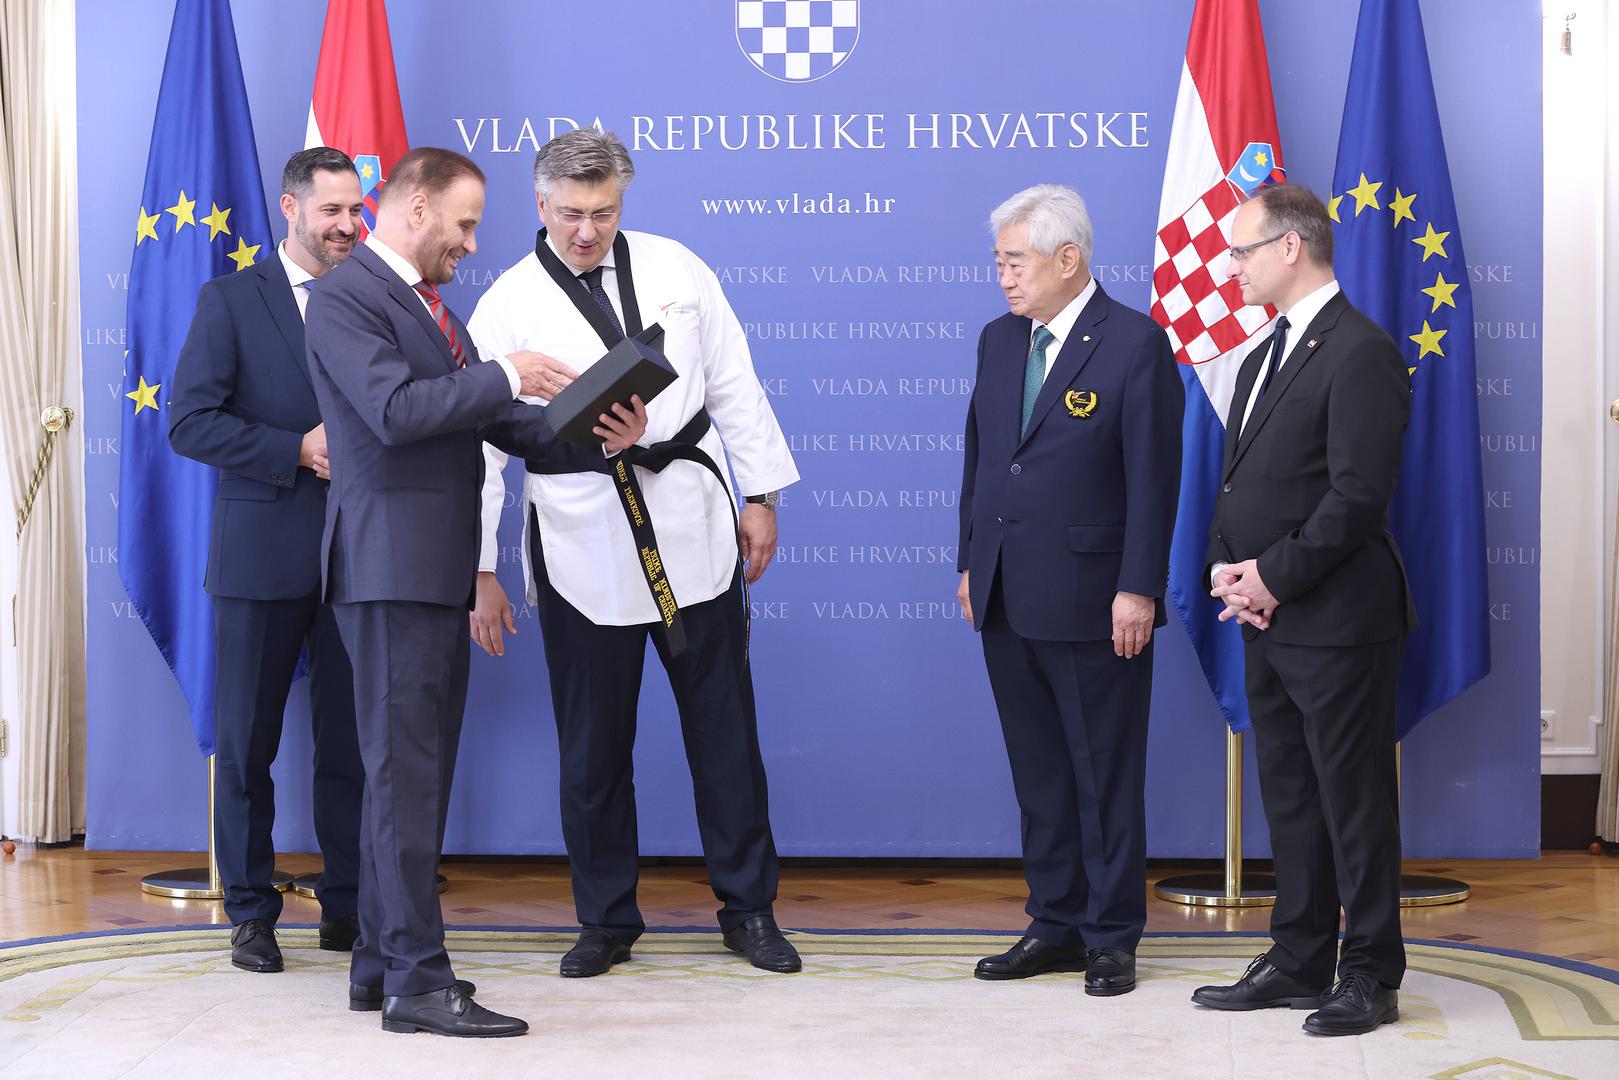 "Malo je knap", poručio je Plenković dok su ga oblačili.